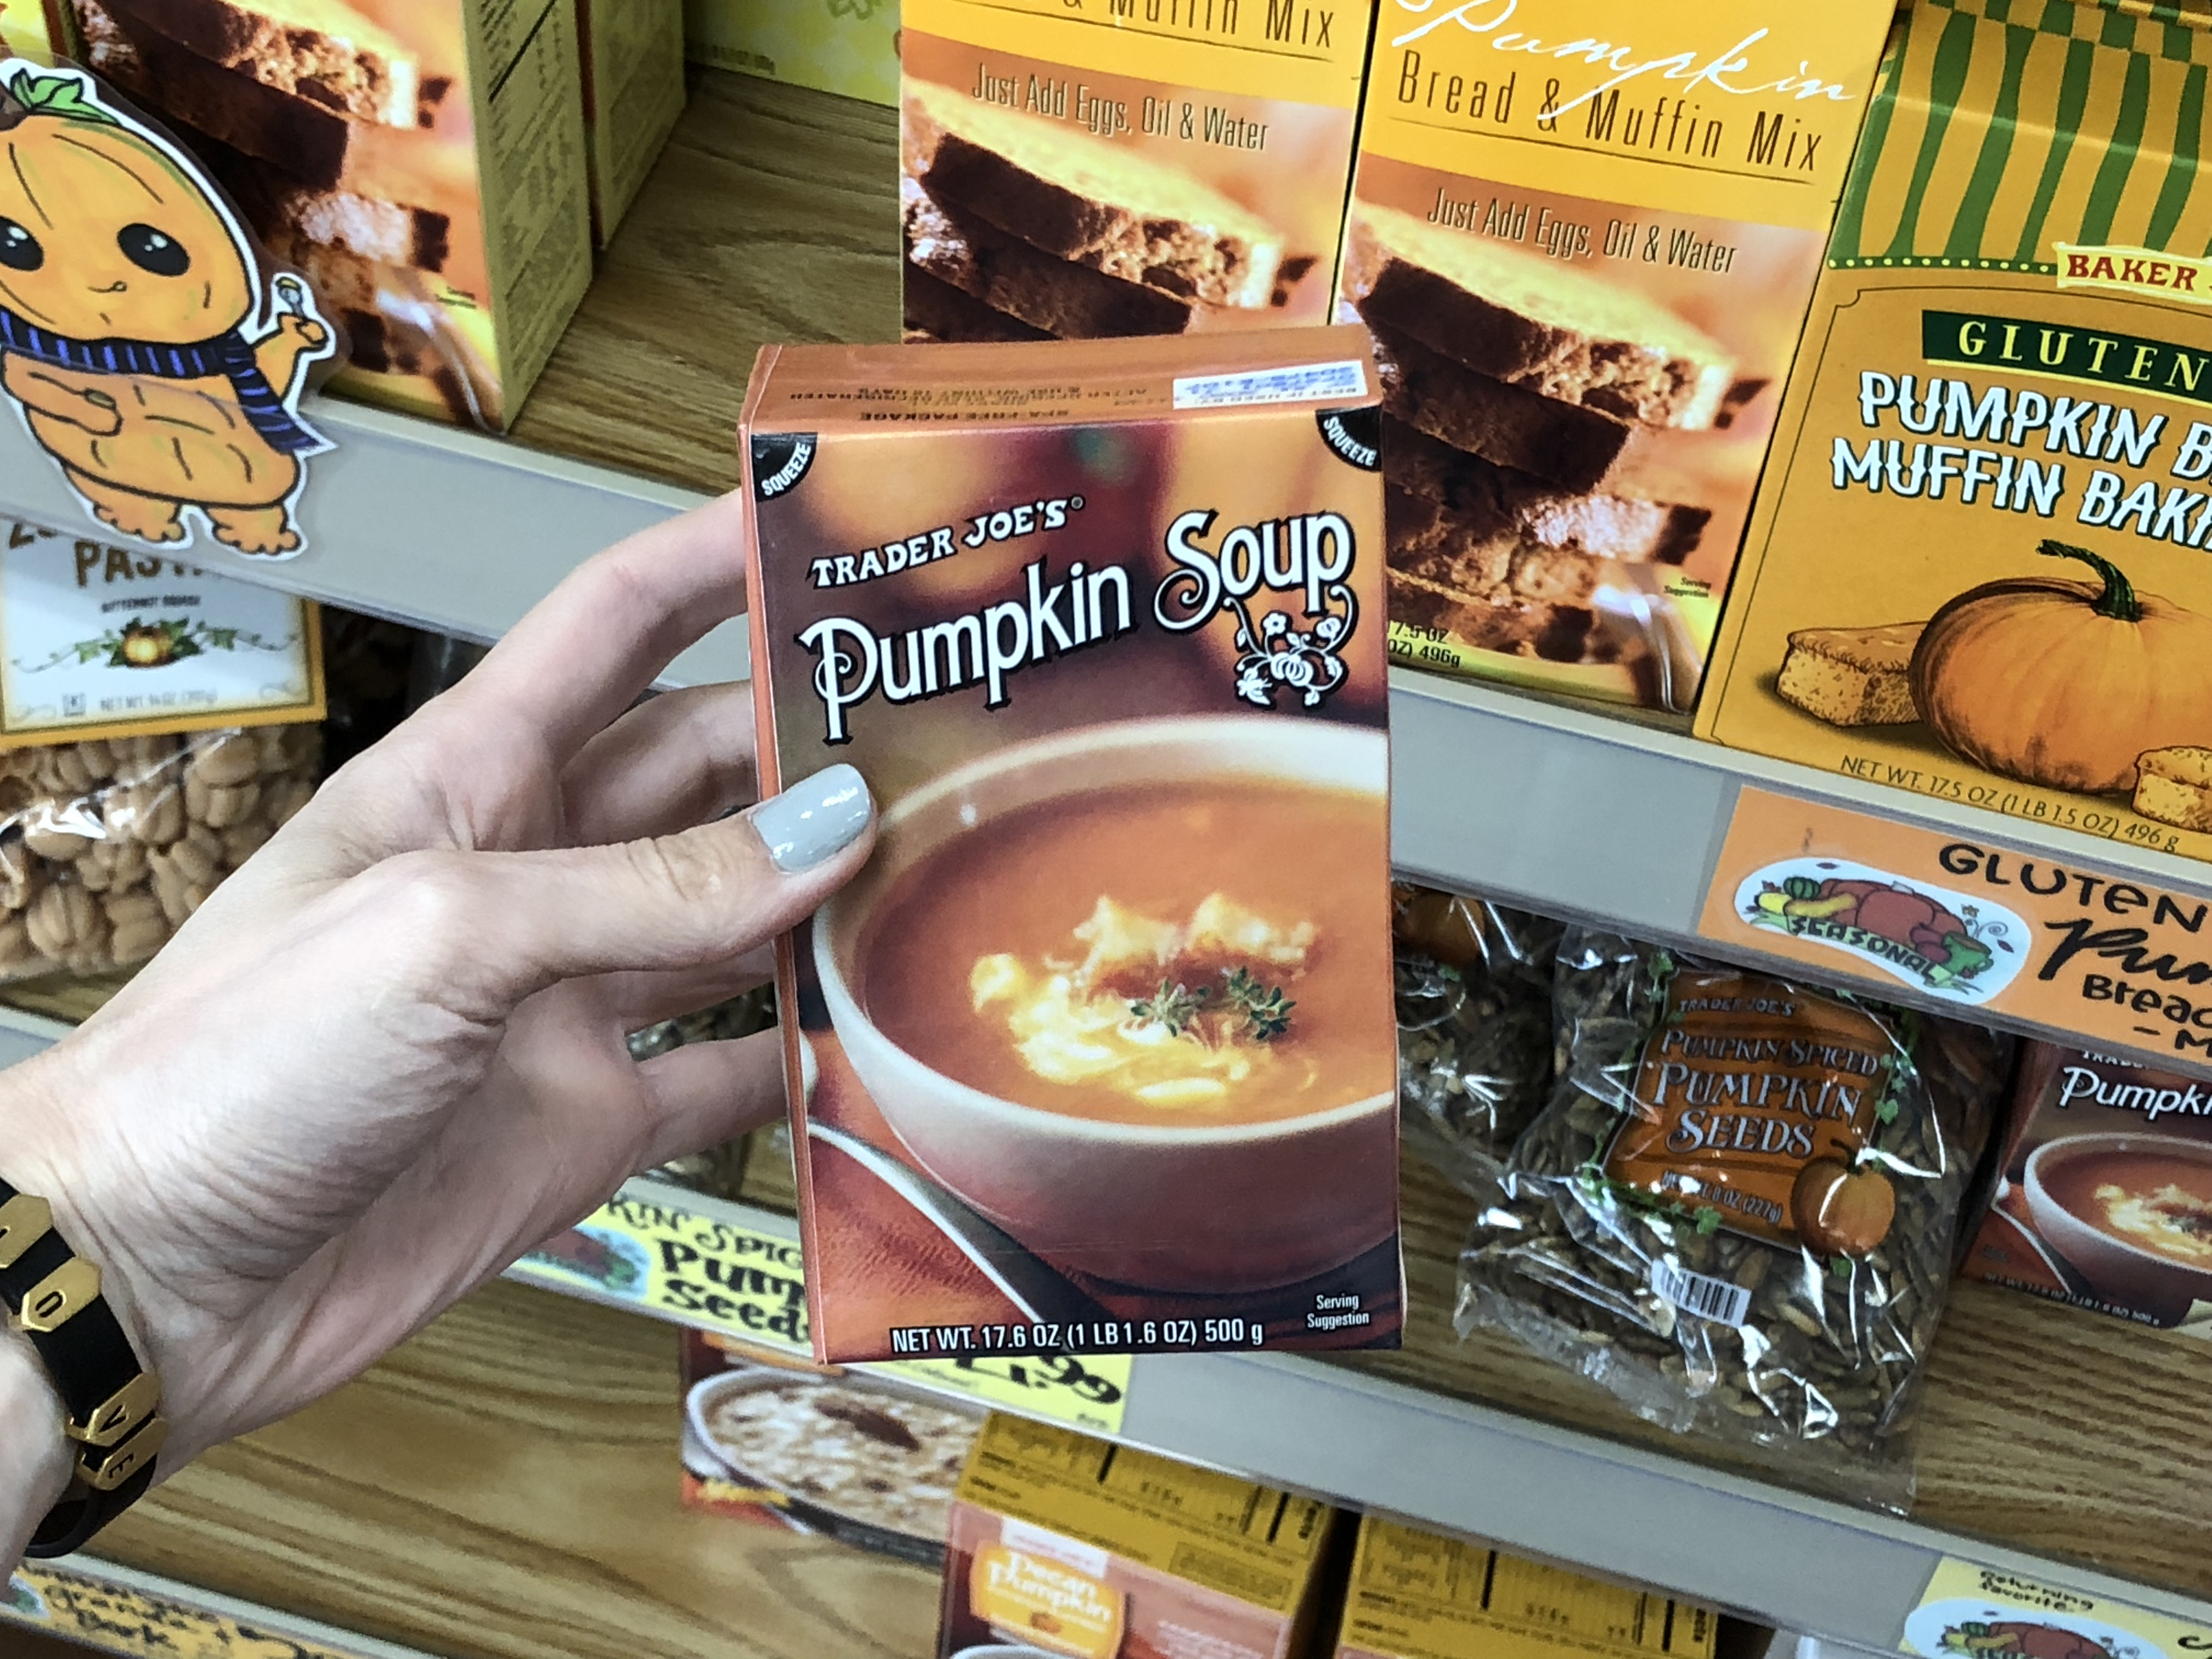 Deals on Trader Joe's Pumpkin items – Pumpkin Soup Trader Joe's